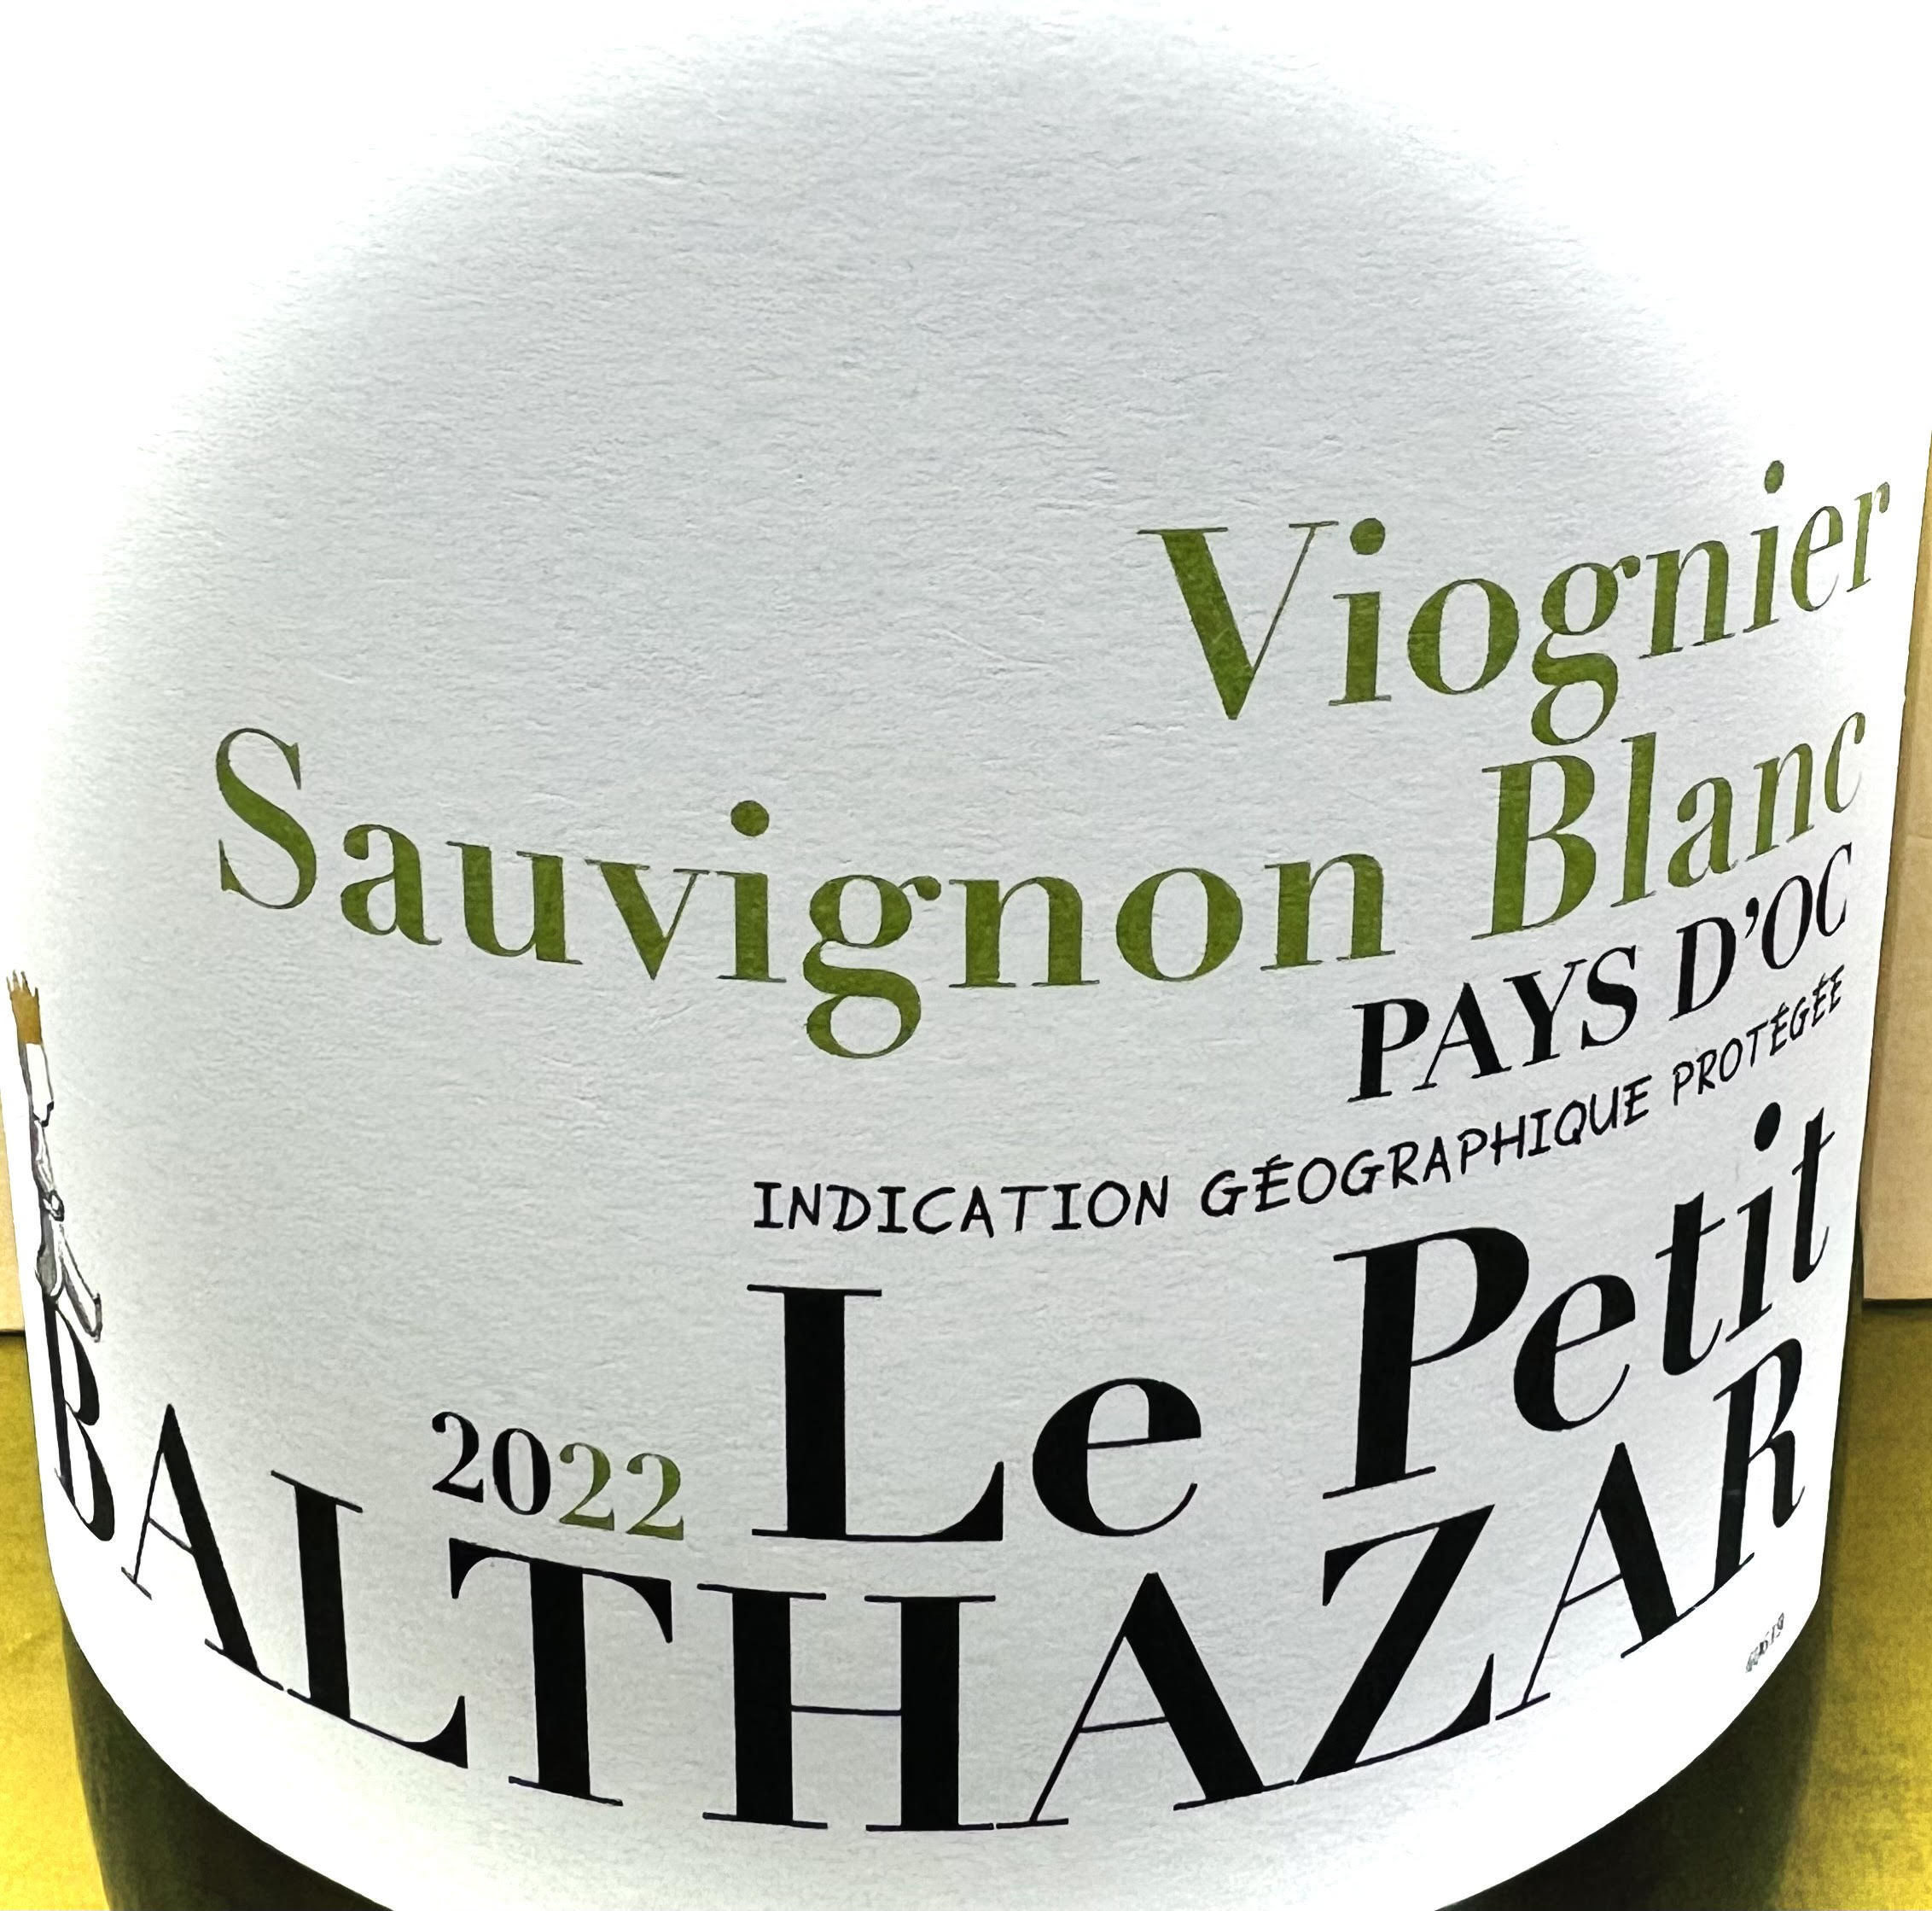 Le Petit Balthazar Sauvignon Blanc/Viognier pays d'oc 2022